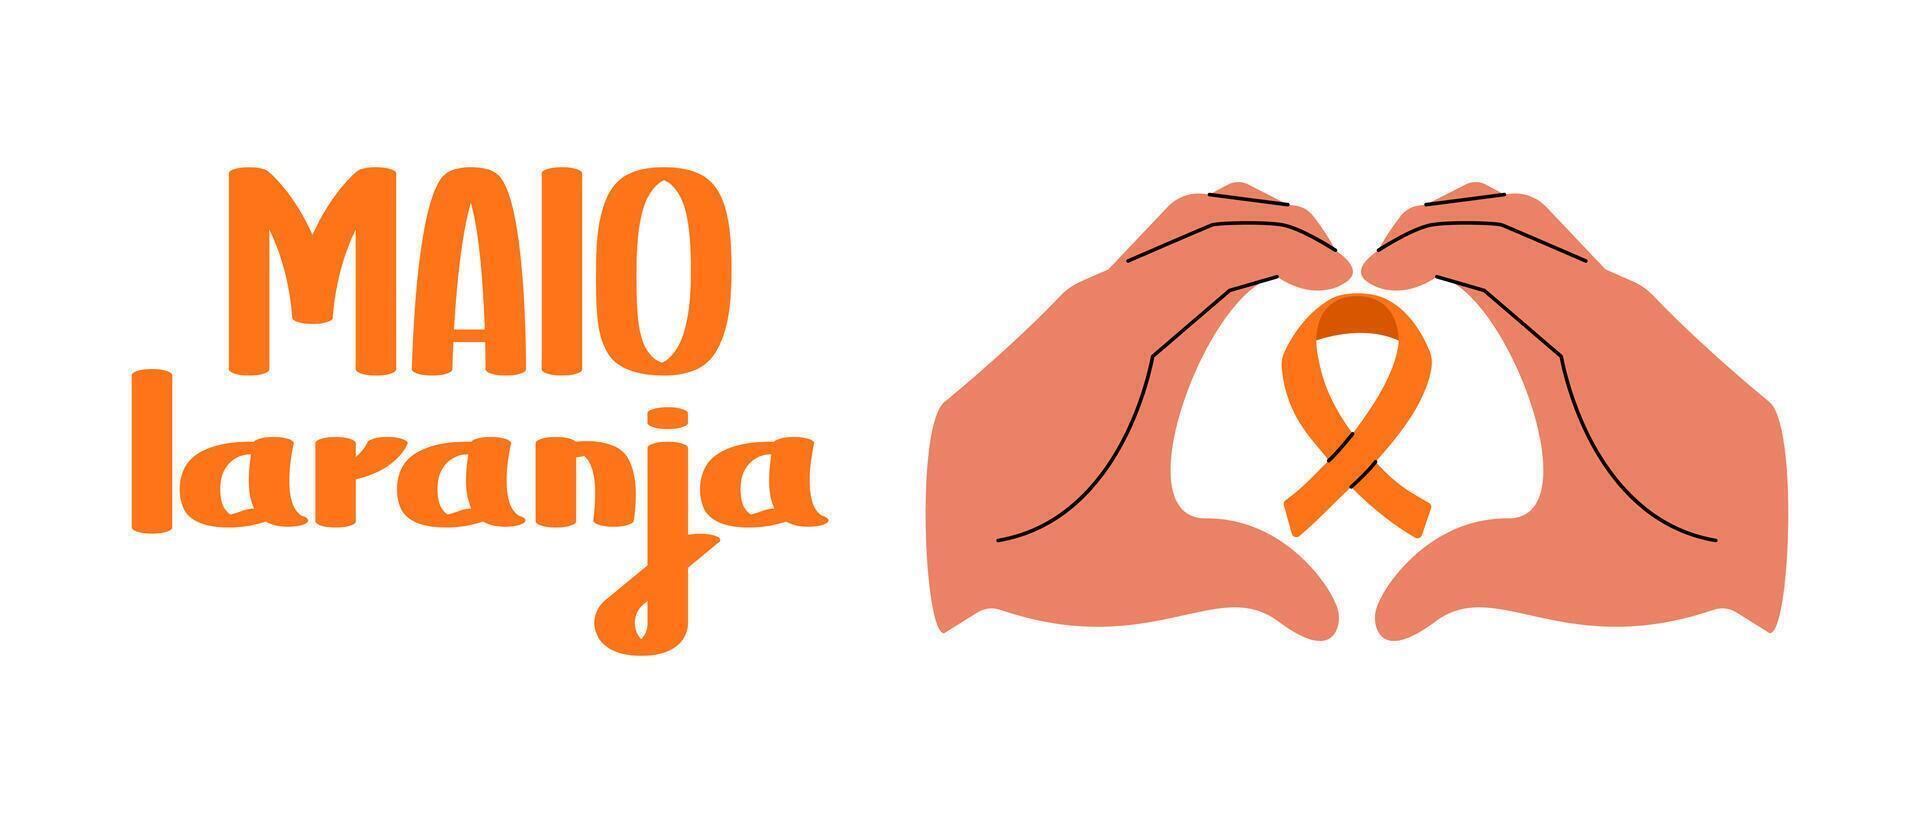 majo laranja kampanj mot våld forskning av barn. händer med orange band. platt baner. vektor